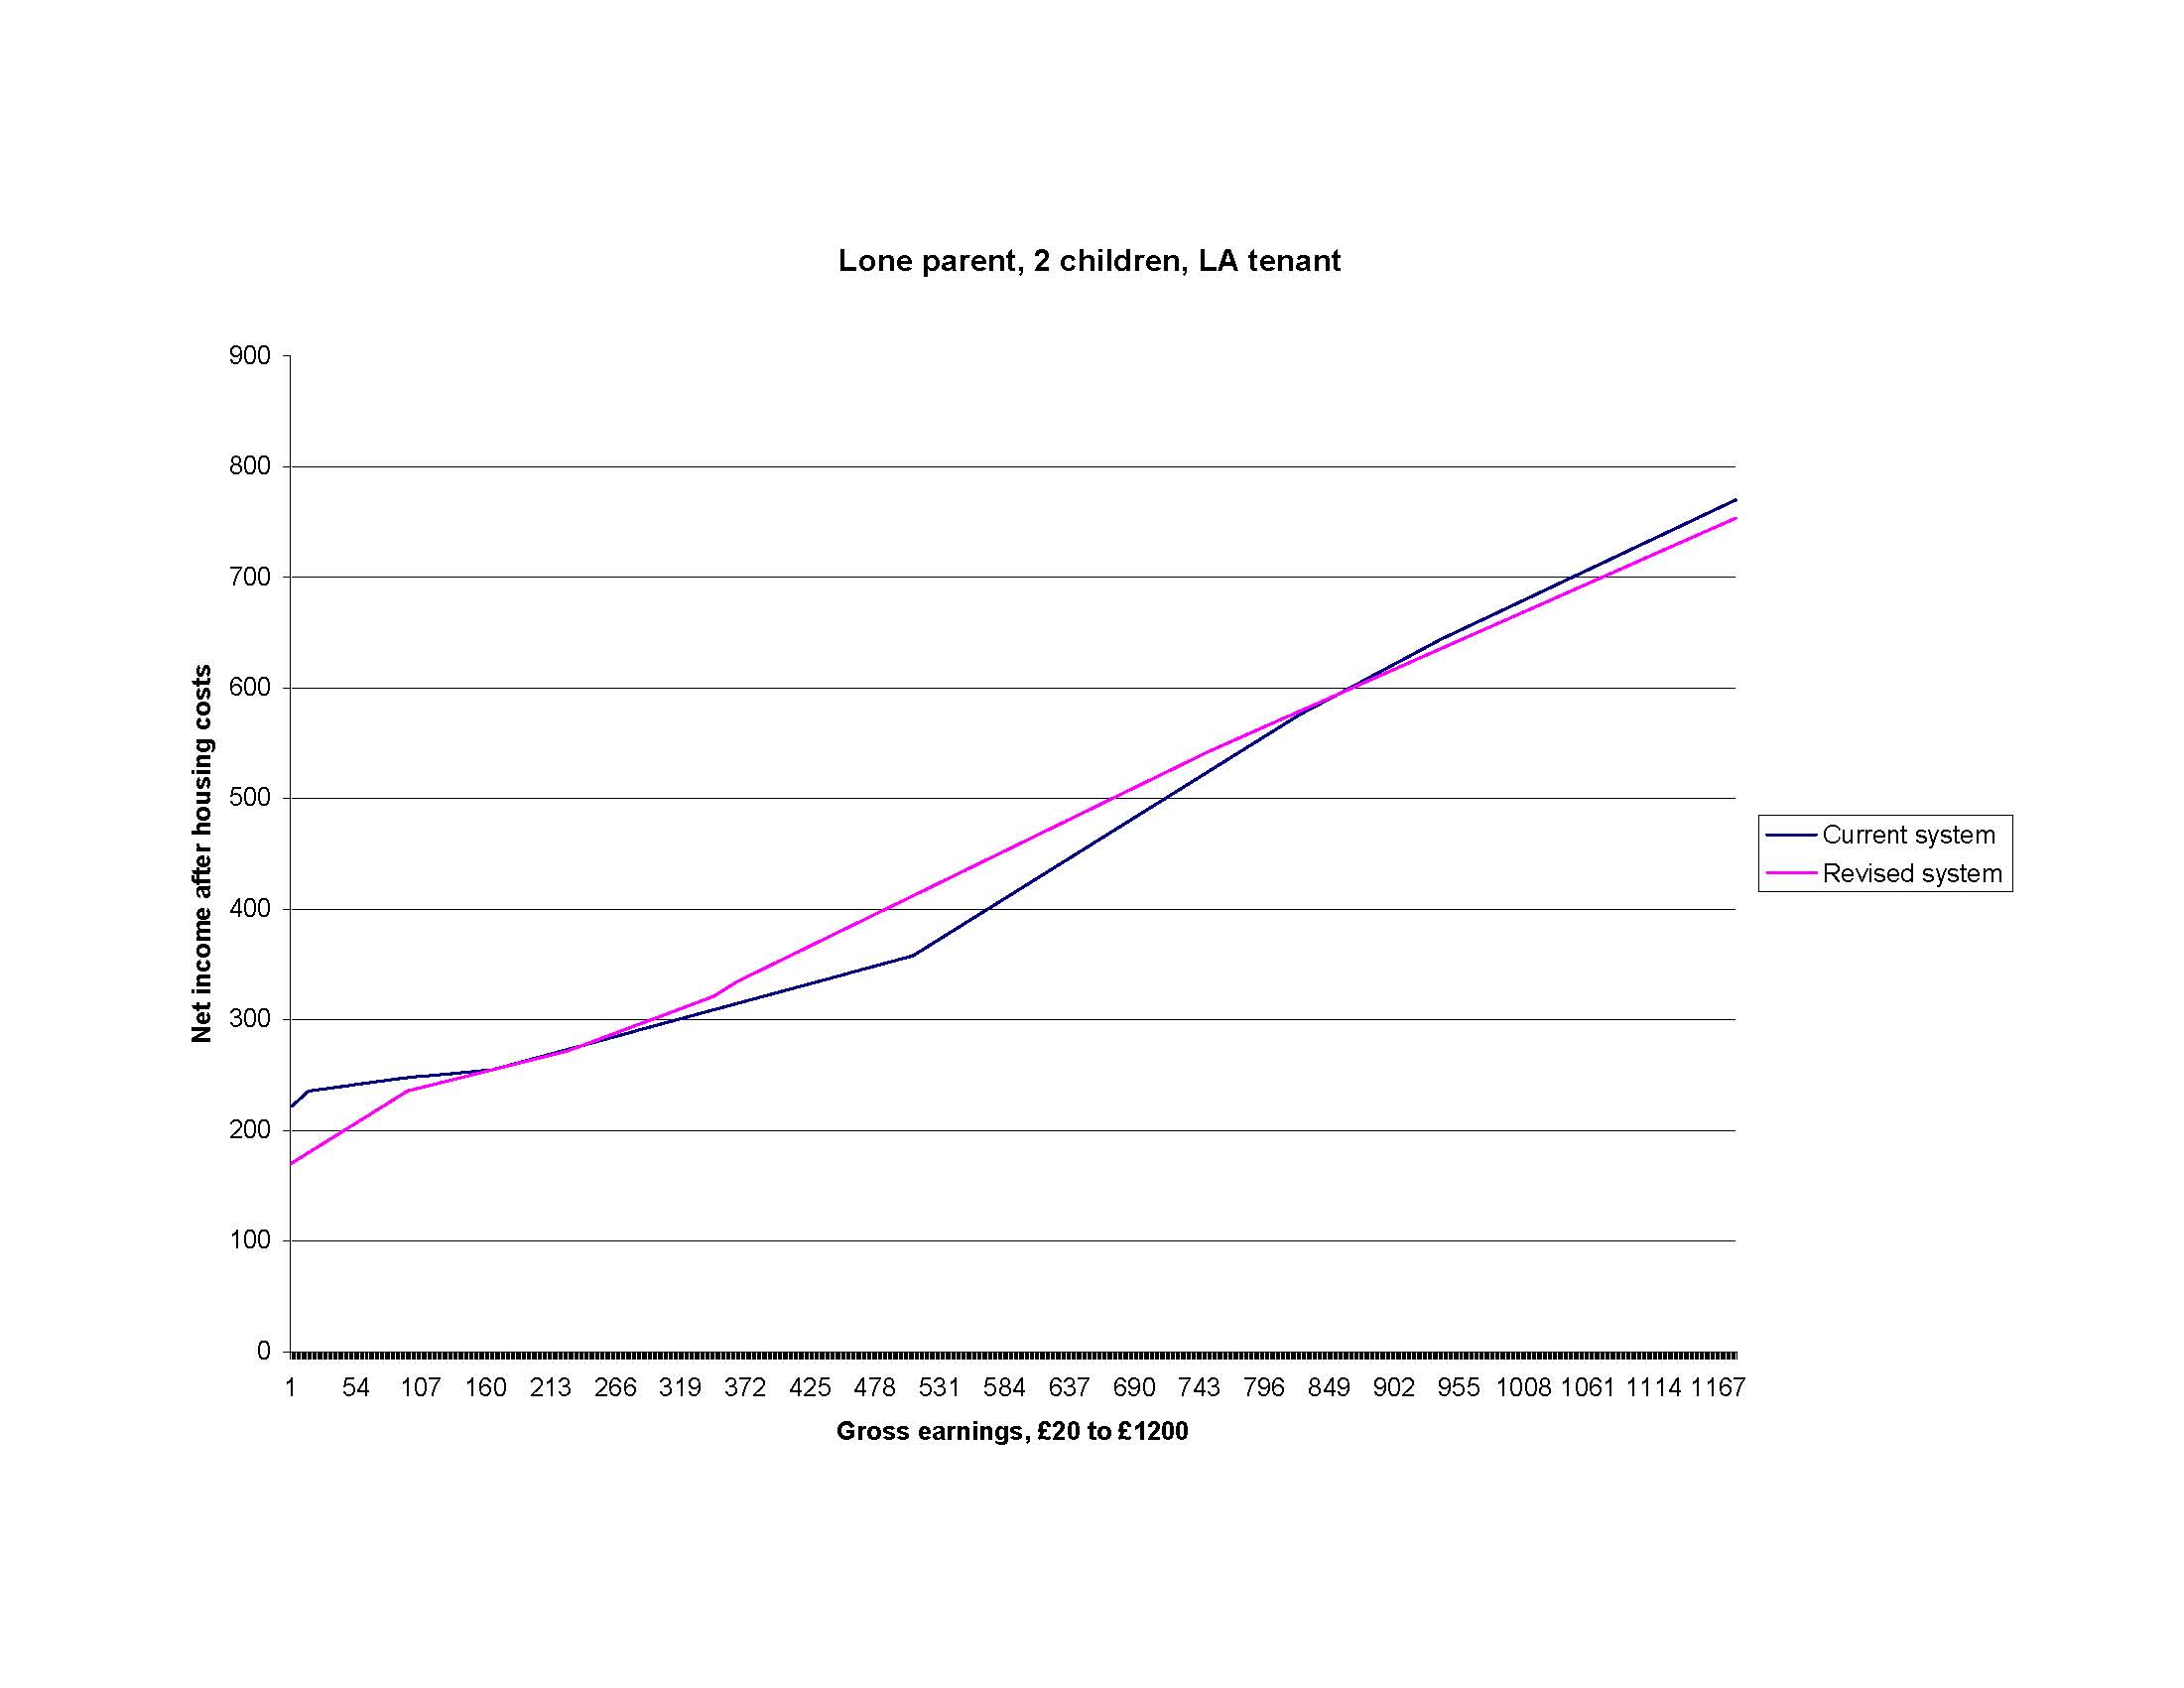 Comparison, lone parent, 2 children, LA tenant, chart (2)